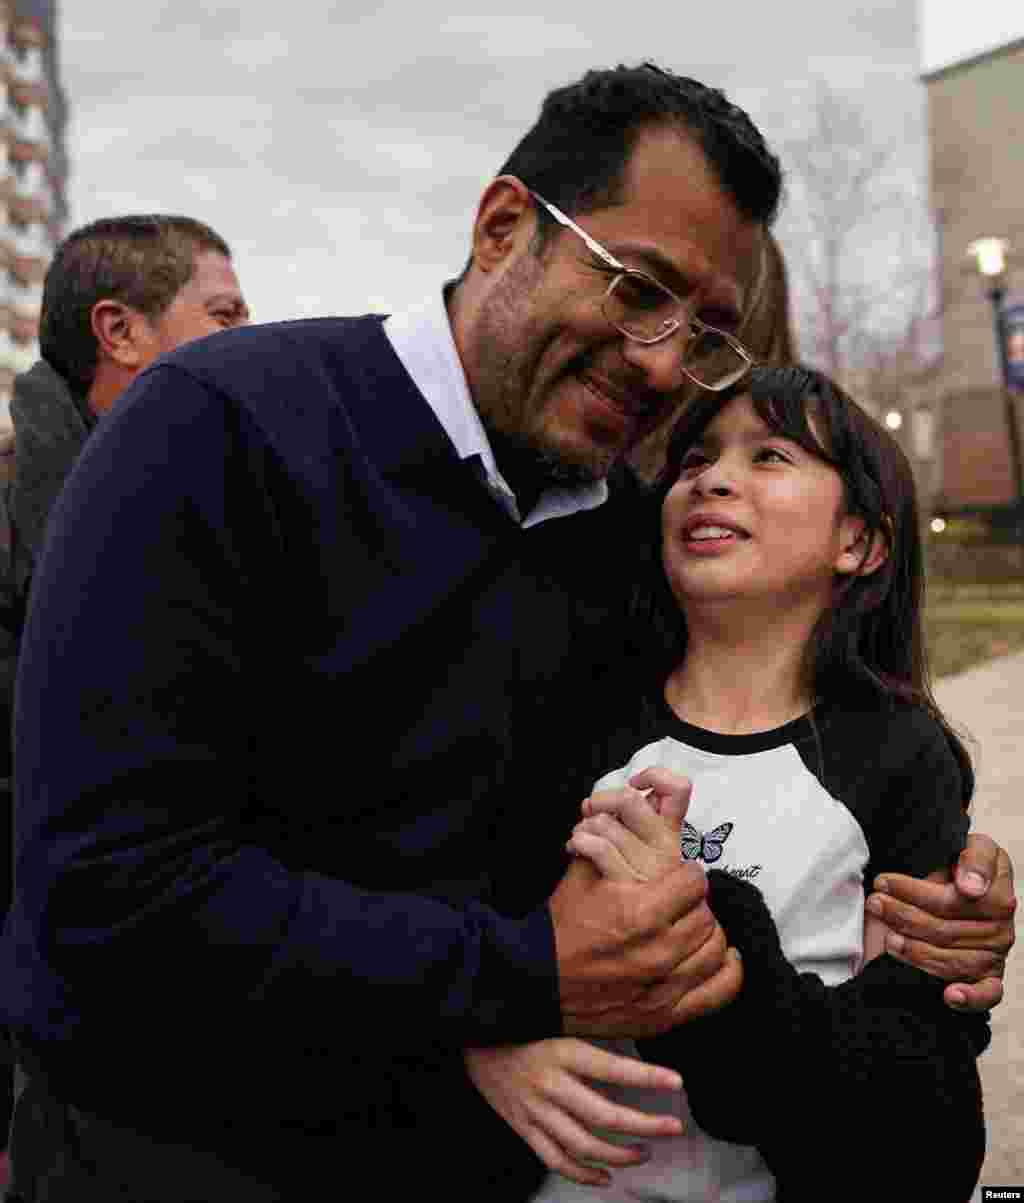 El ex aspirante presidencial nicaragüense abraza a su hija, Alejandra, mientras celebra con simpatizantes fuera de un hotel.